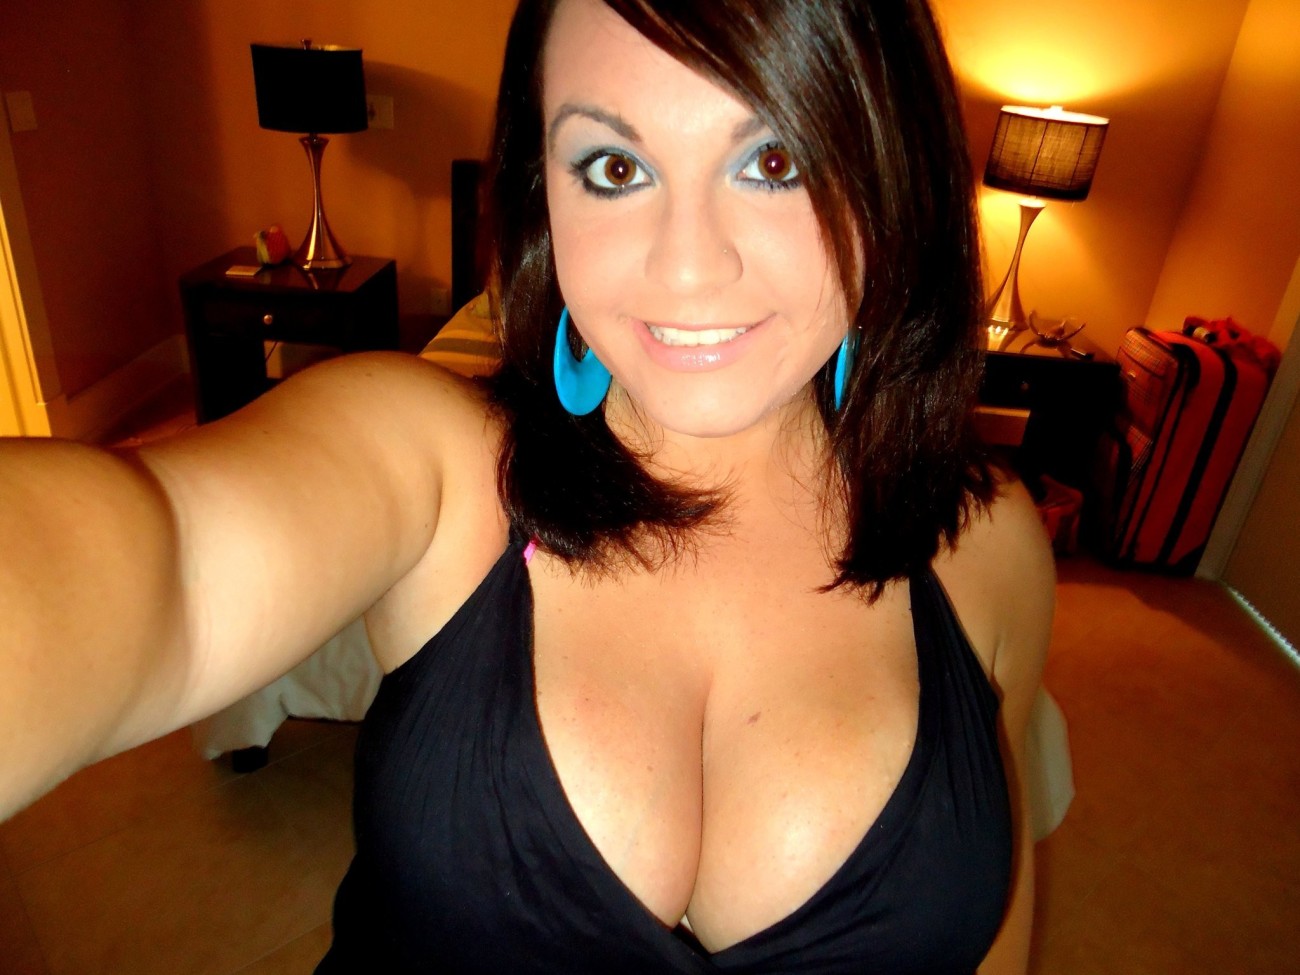 cleavage selfie porn